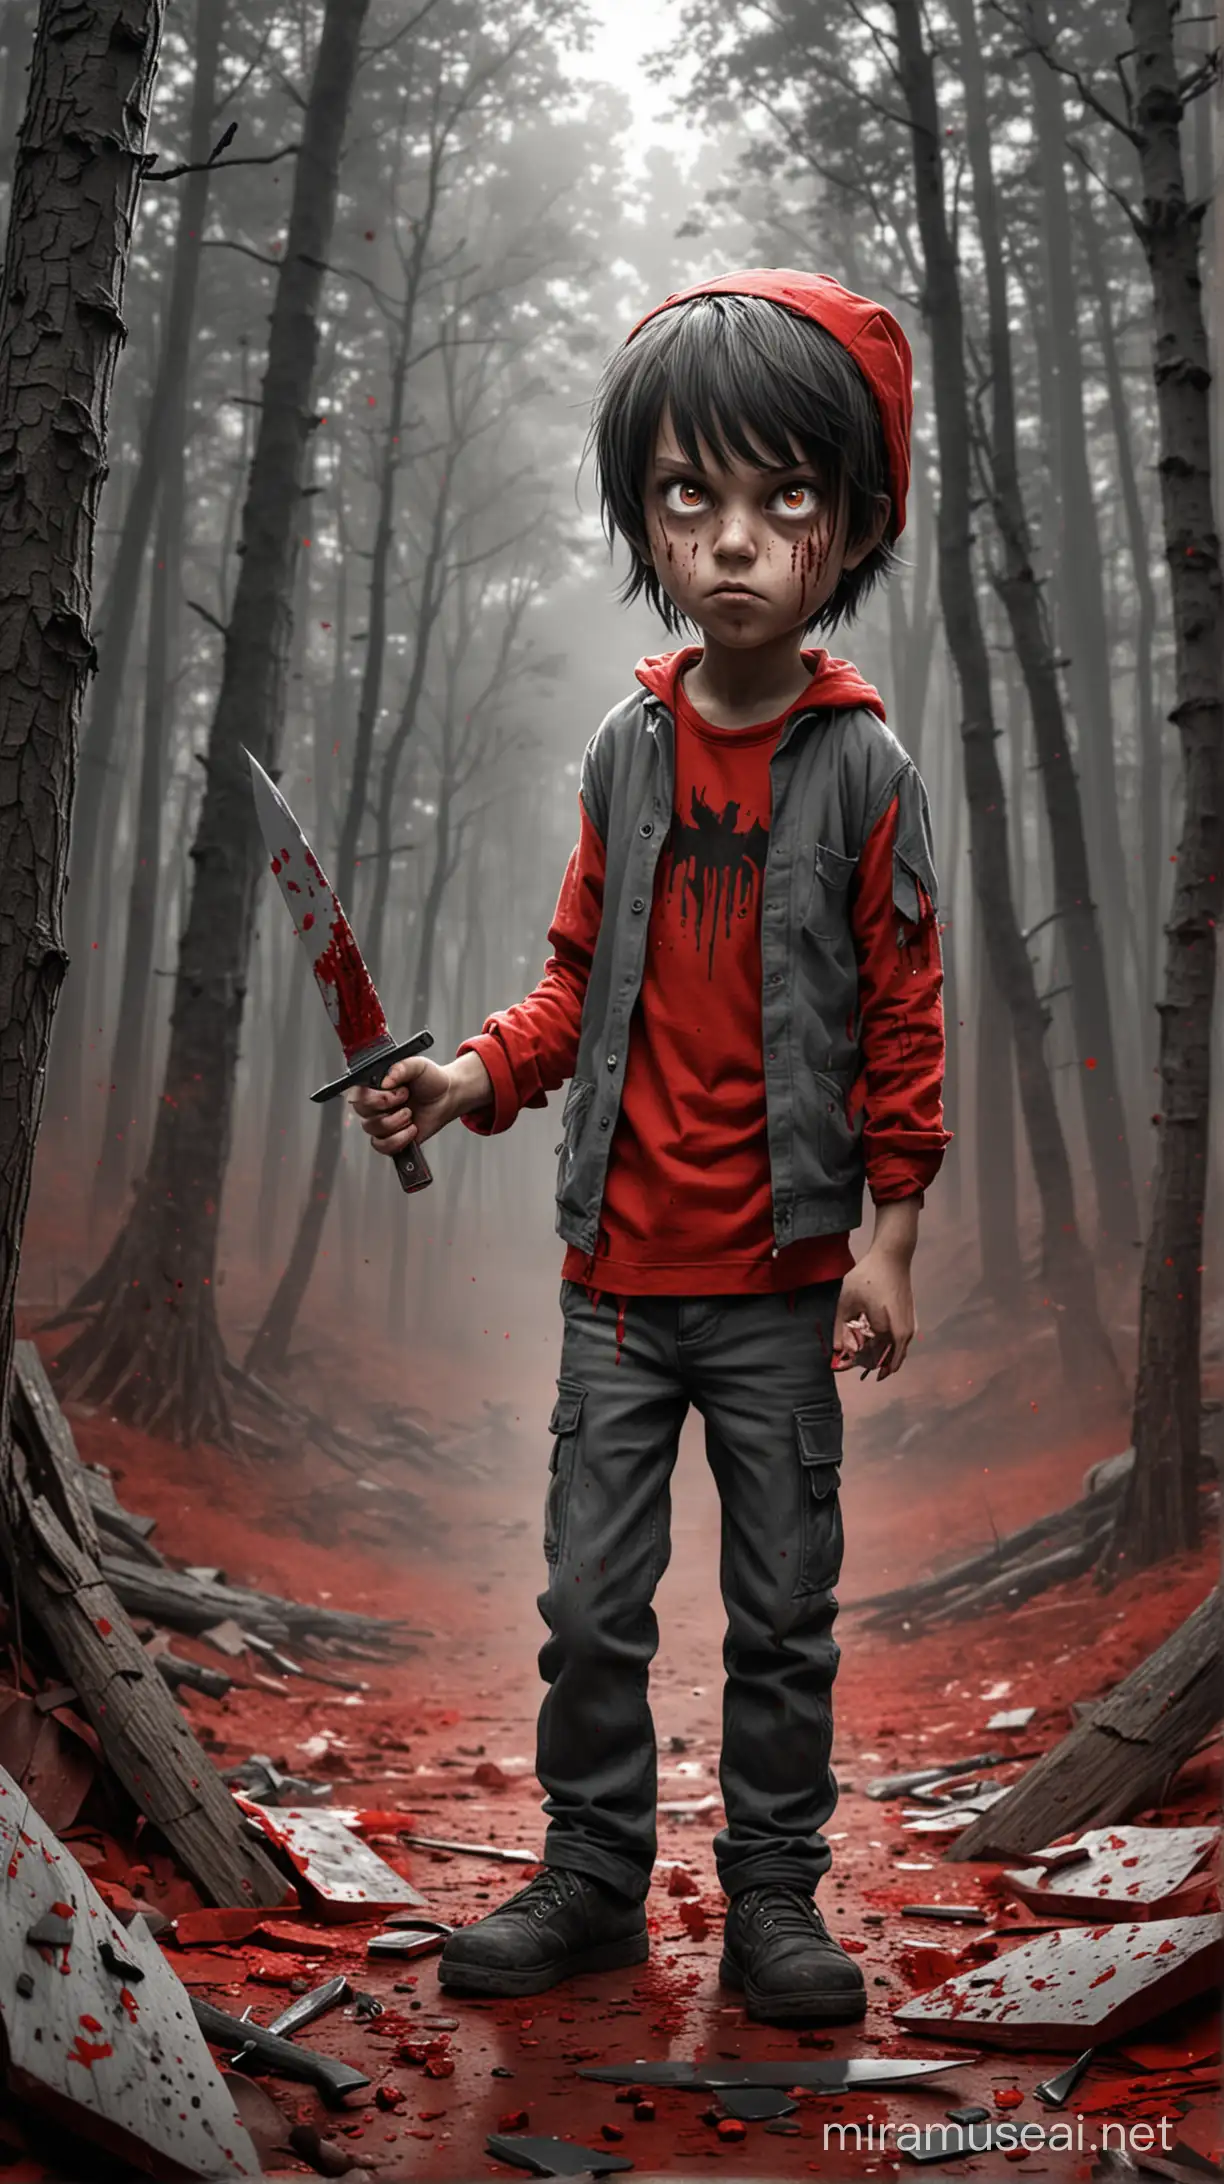 Niño siniestro ,dibujo animado,terror,cuchillo,sangre,cartón,colores rojos y grises,fondo bosque